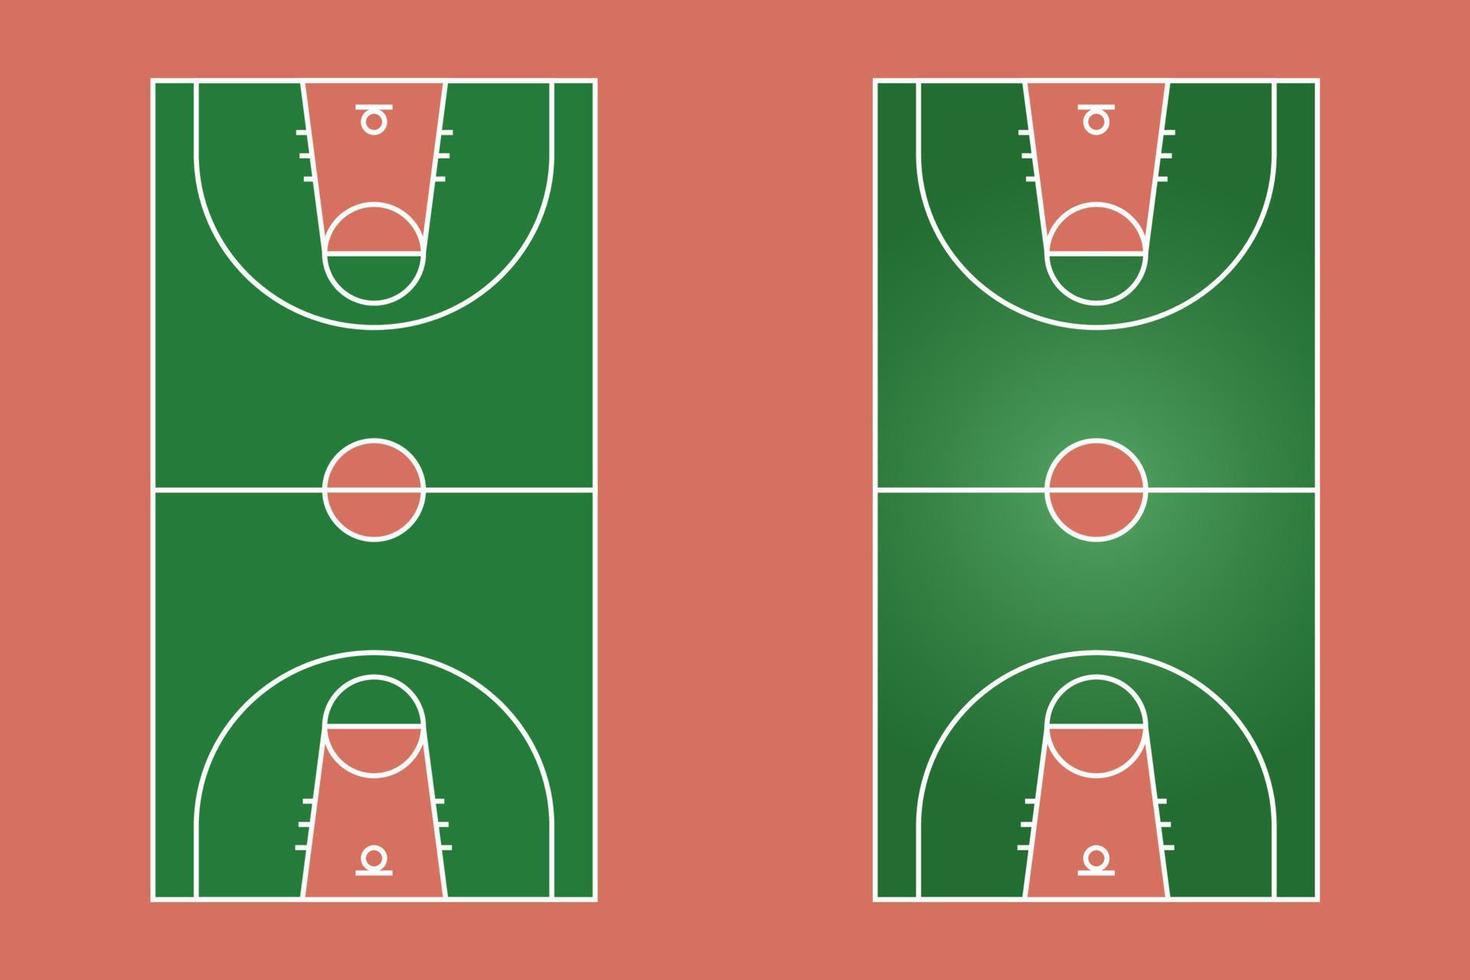 diseño plano de campo de baloncesto, ilustración gráfica de campo deportivo, vector de cancha de baloncesto y diseño.